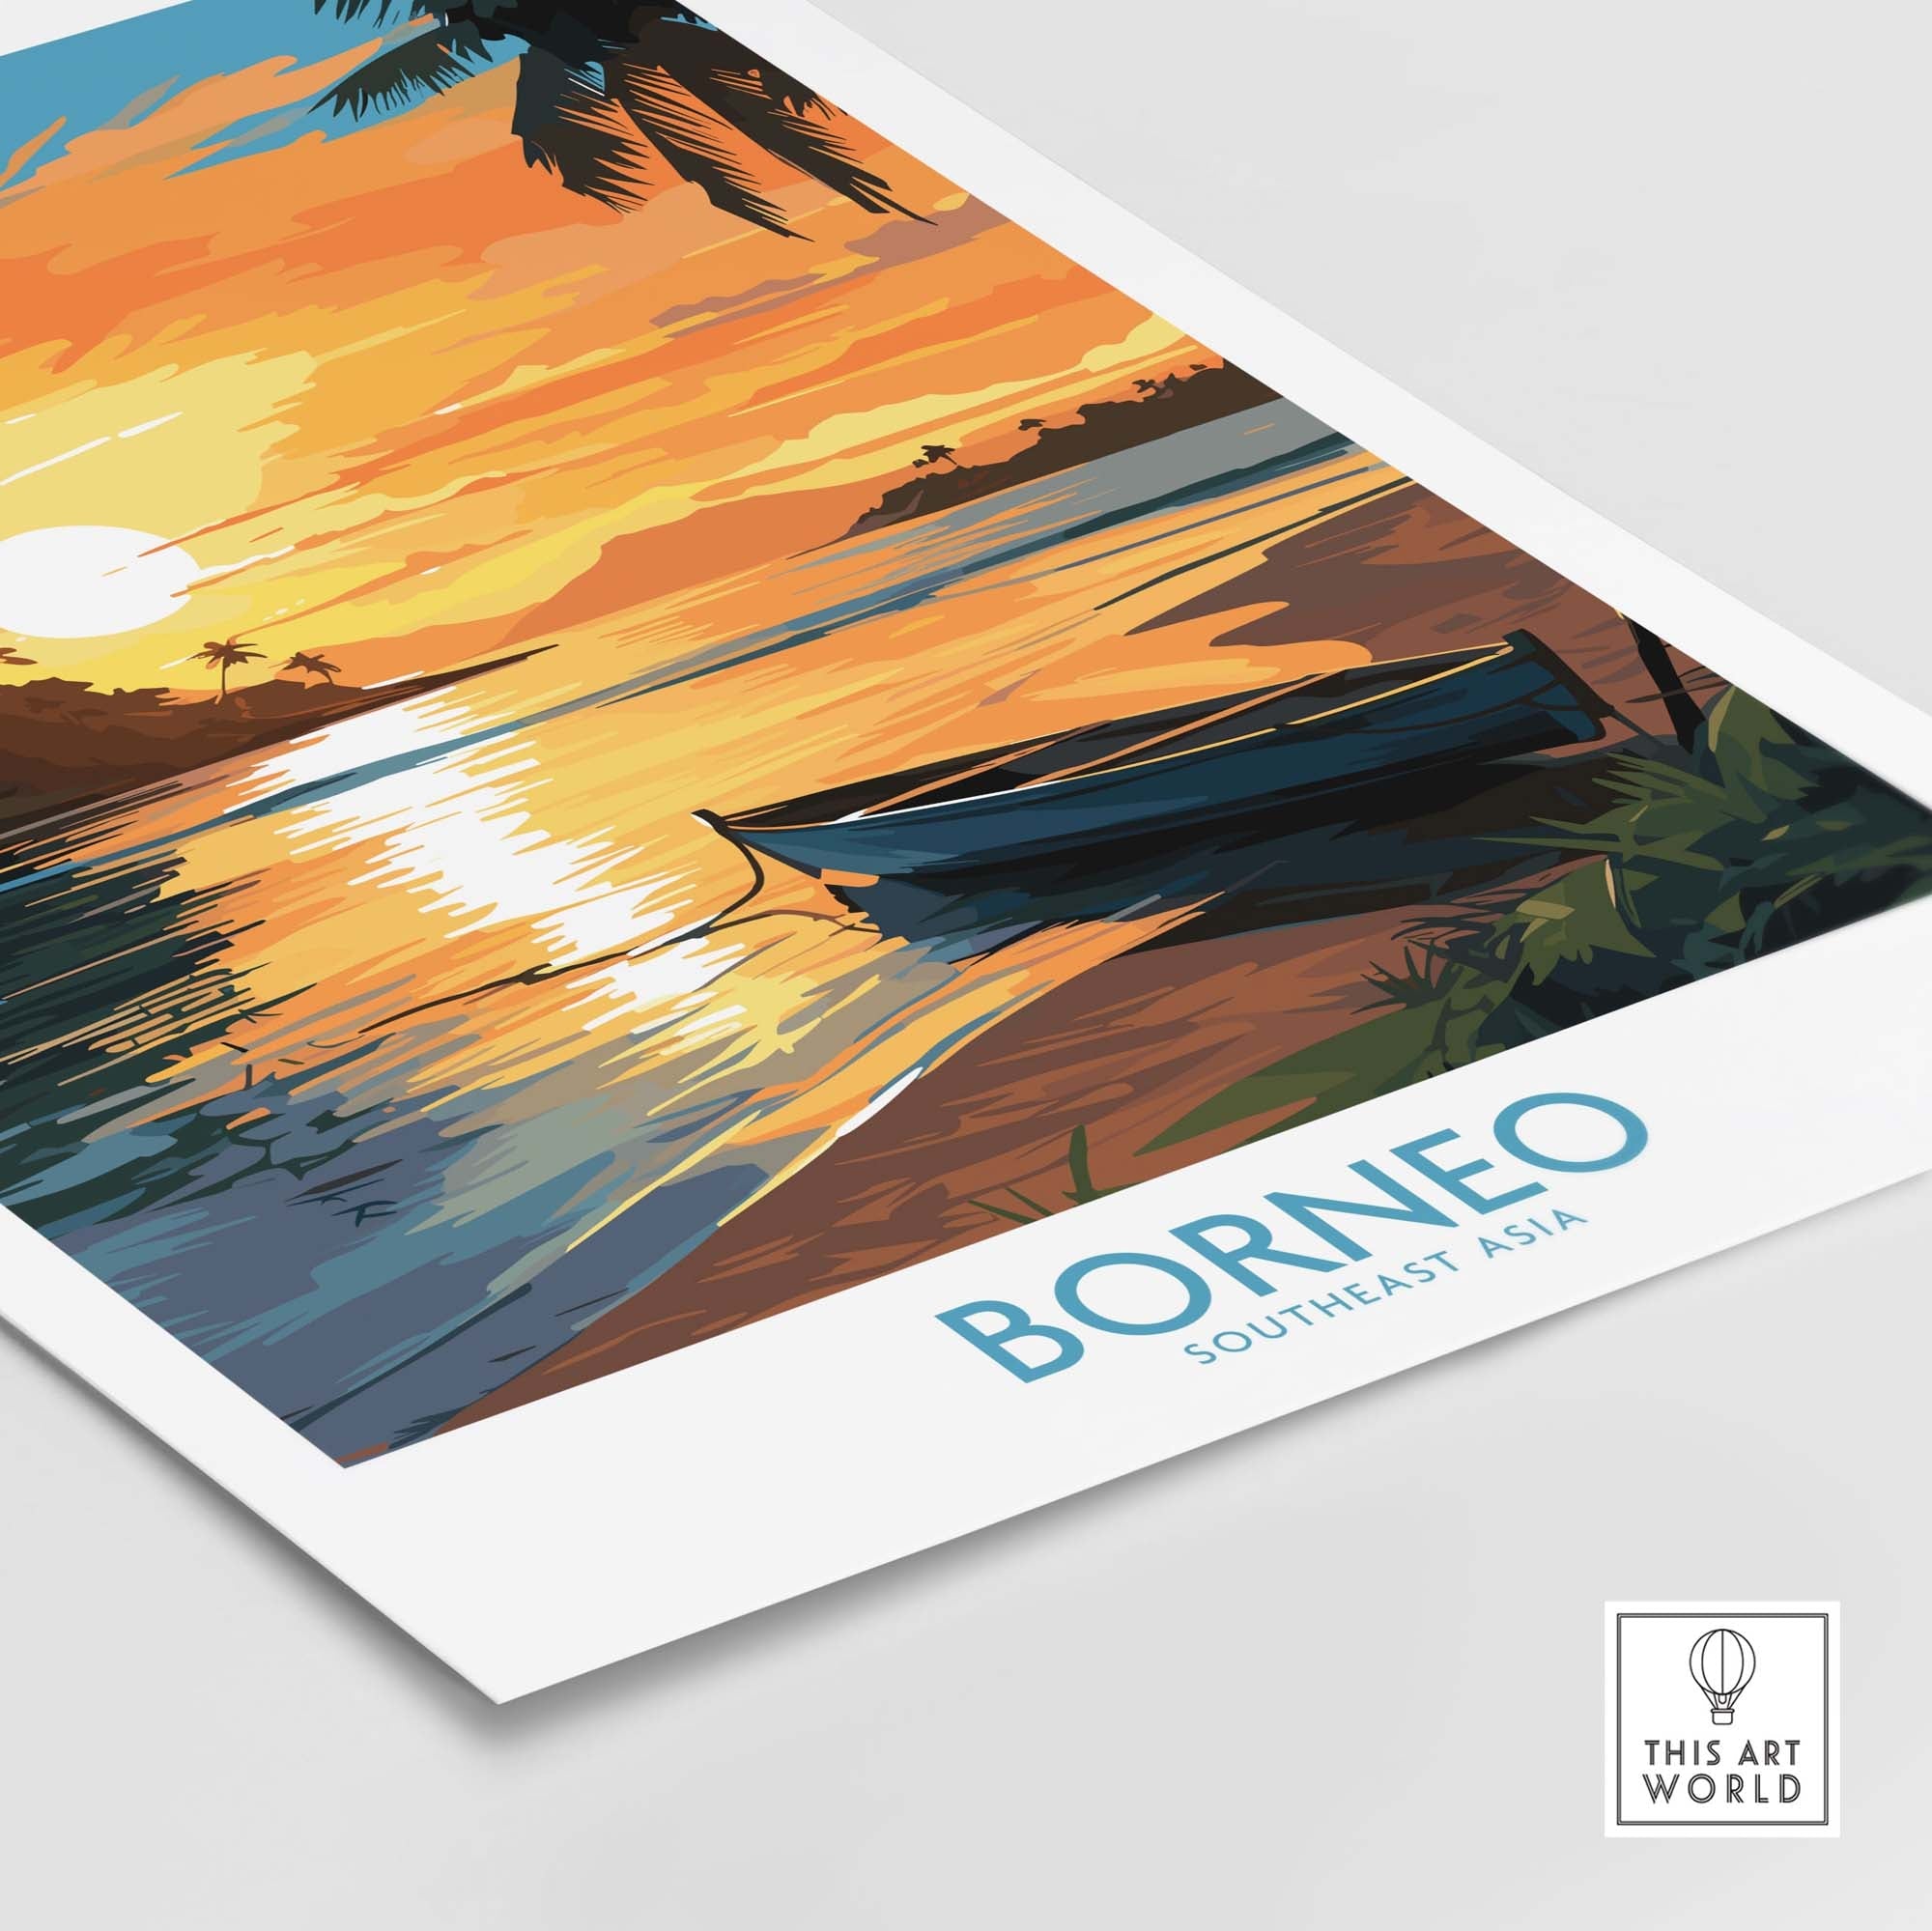 Borneo Travel Poster